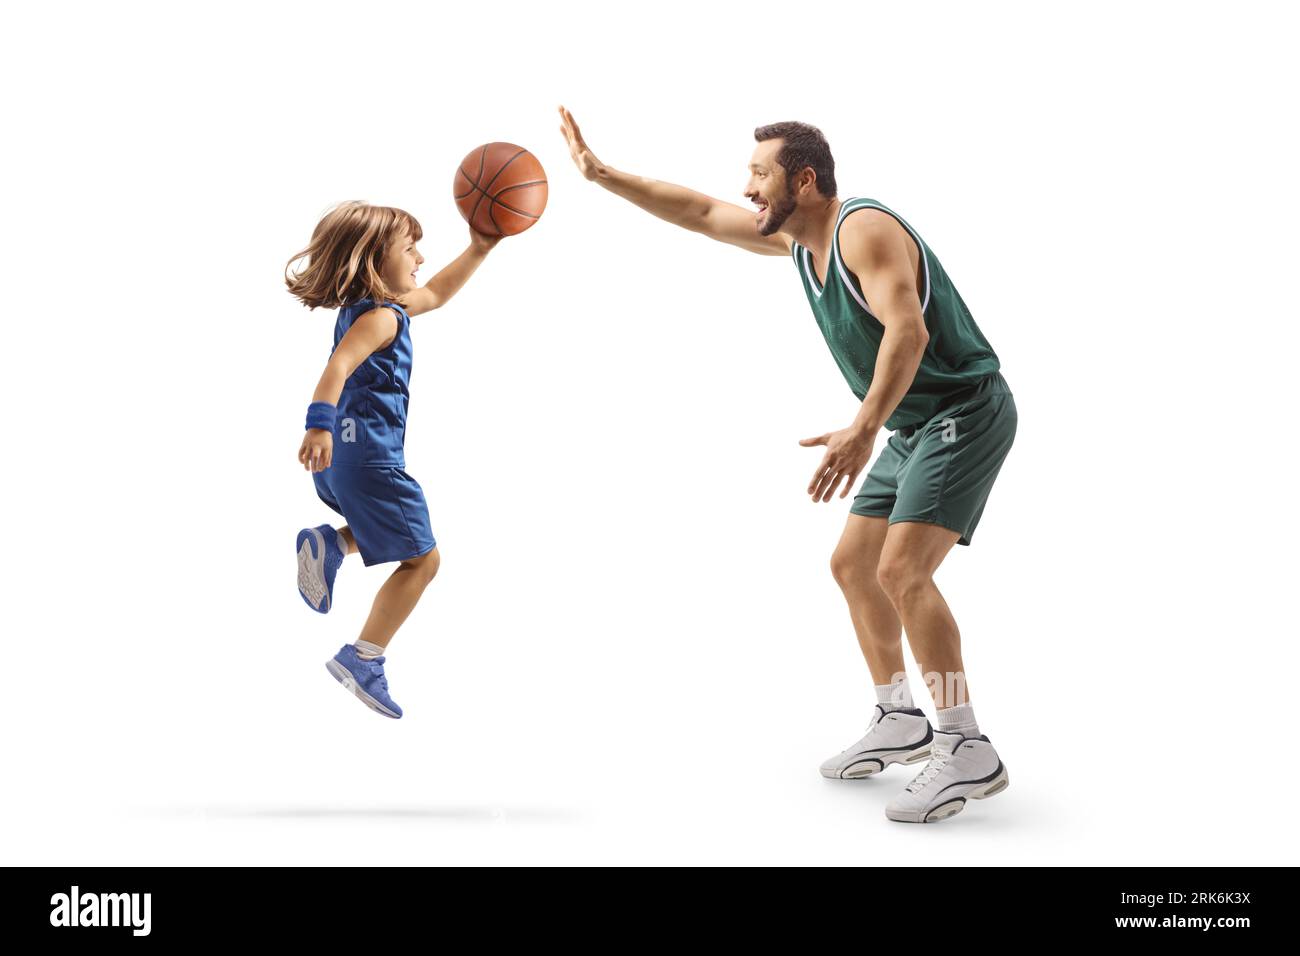 Ragazza che gioca a basket con un giocatore professionista di basket isolato su sfondo bianco Foto Stock